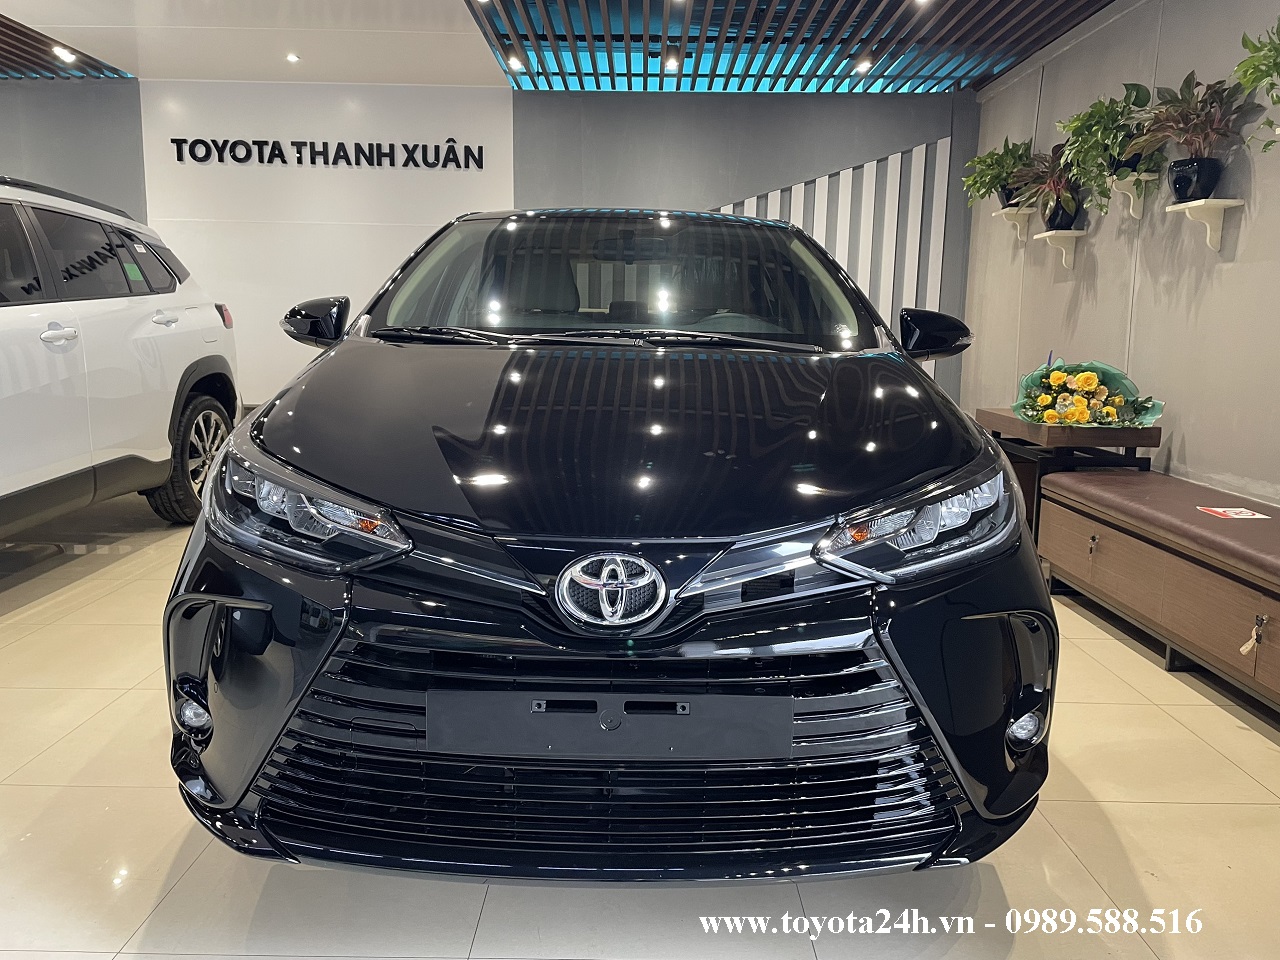 Toyota Vios 1.5G 2022 Màu Đen Ánh | Bảng Giá Xe Lăn Bánh | Hình Ảnh Thông Số Kỹ Thuật